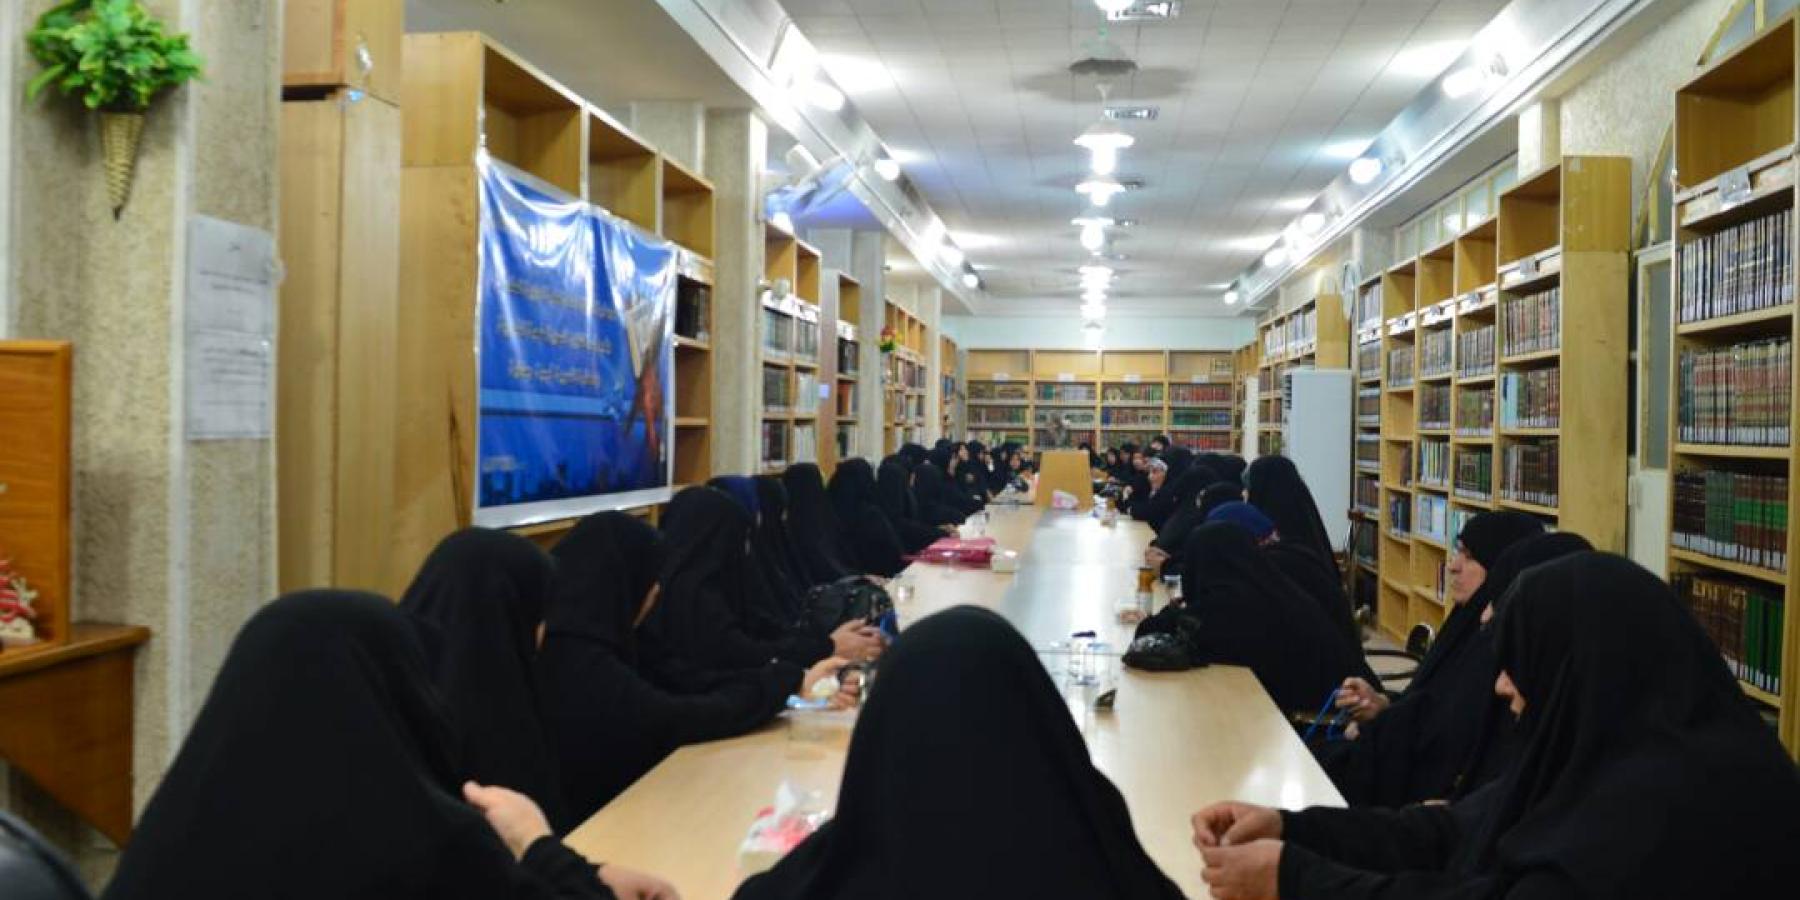 شعبة الفكرية والمكتبة النسوية في العتبة العلوية تقيم أمسيات فكرية ثقافية رمضانية للنخب النسوية المختلفة